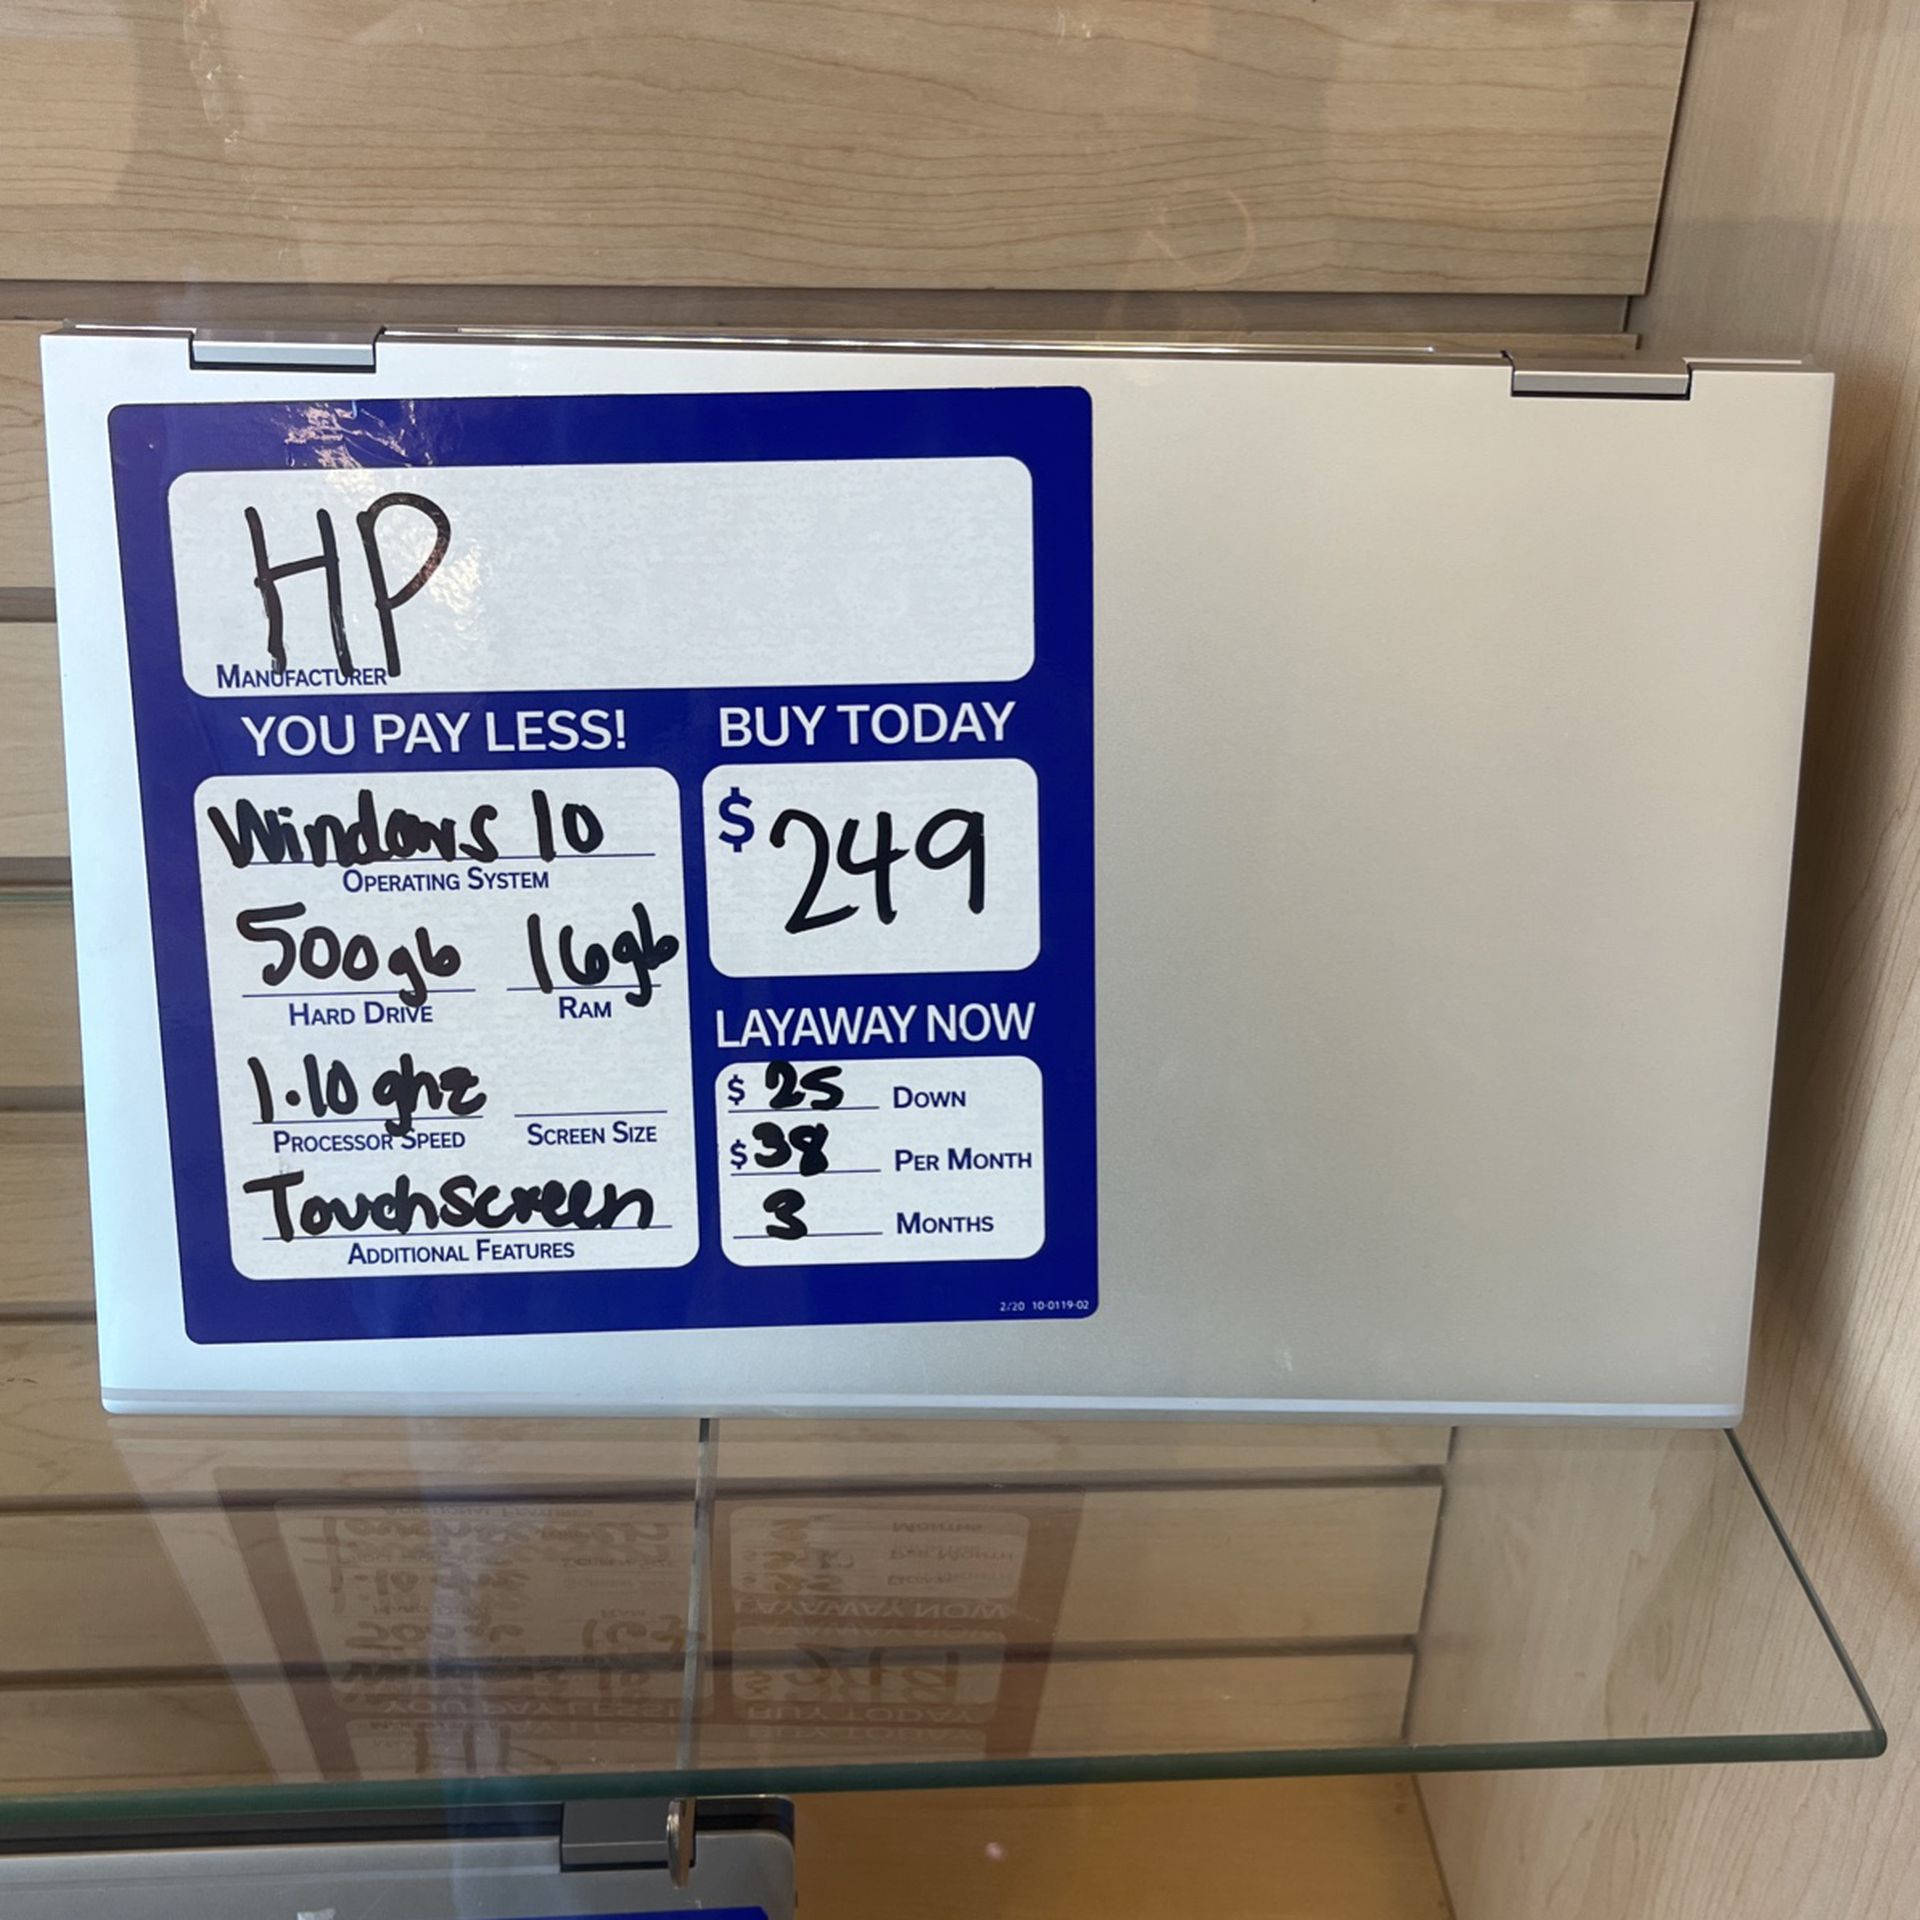 Hewlett Packard Laptop